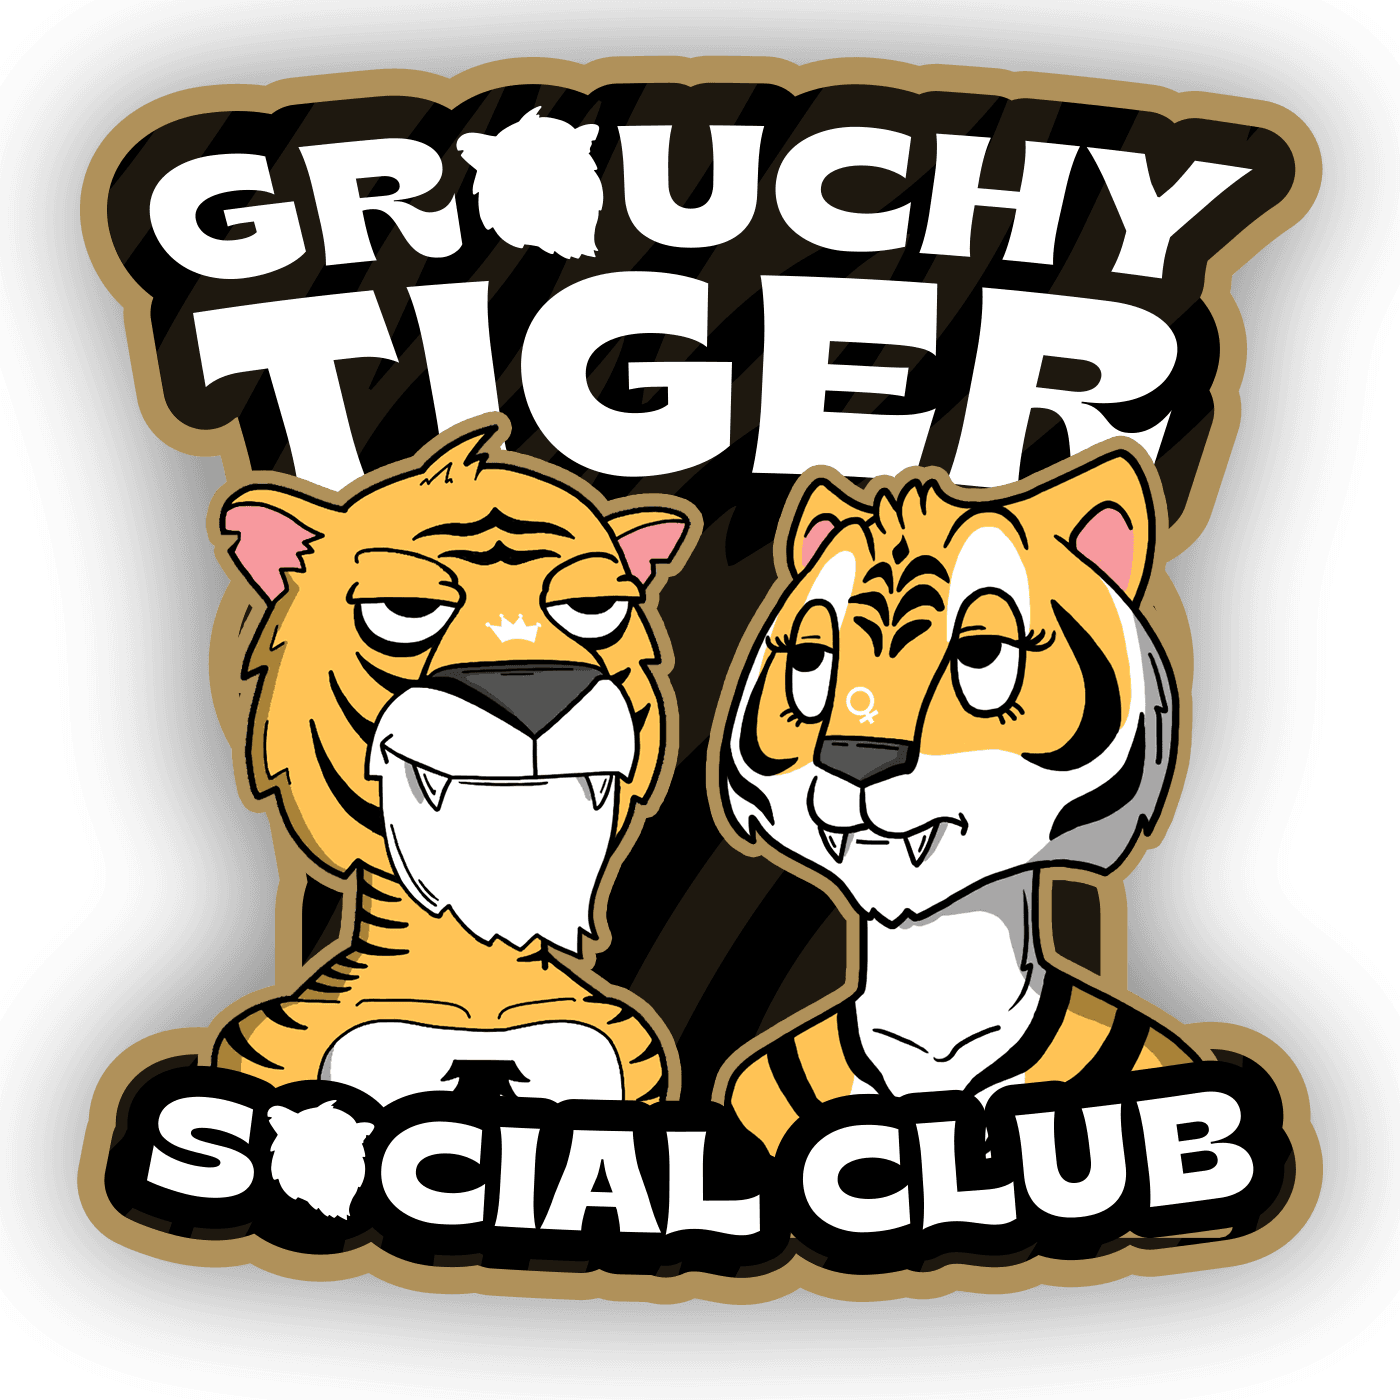 Grouchy Tiger Social Club